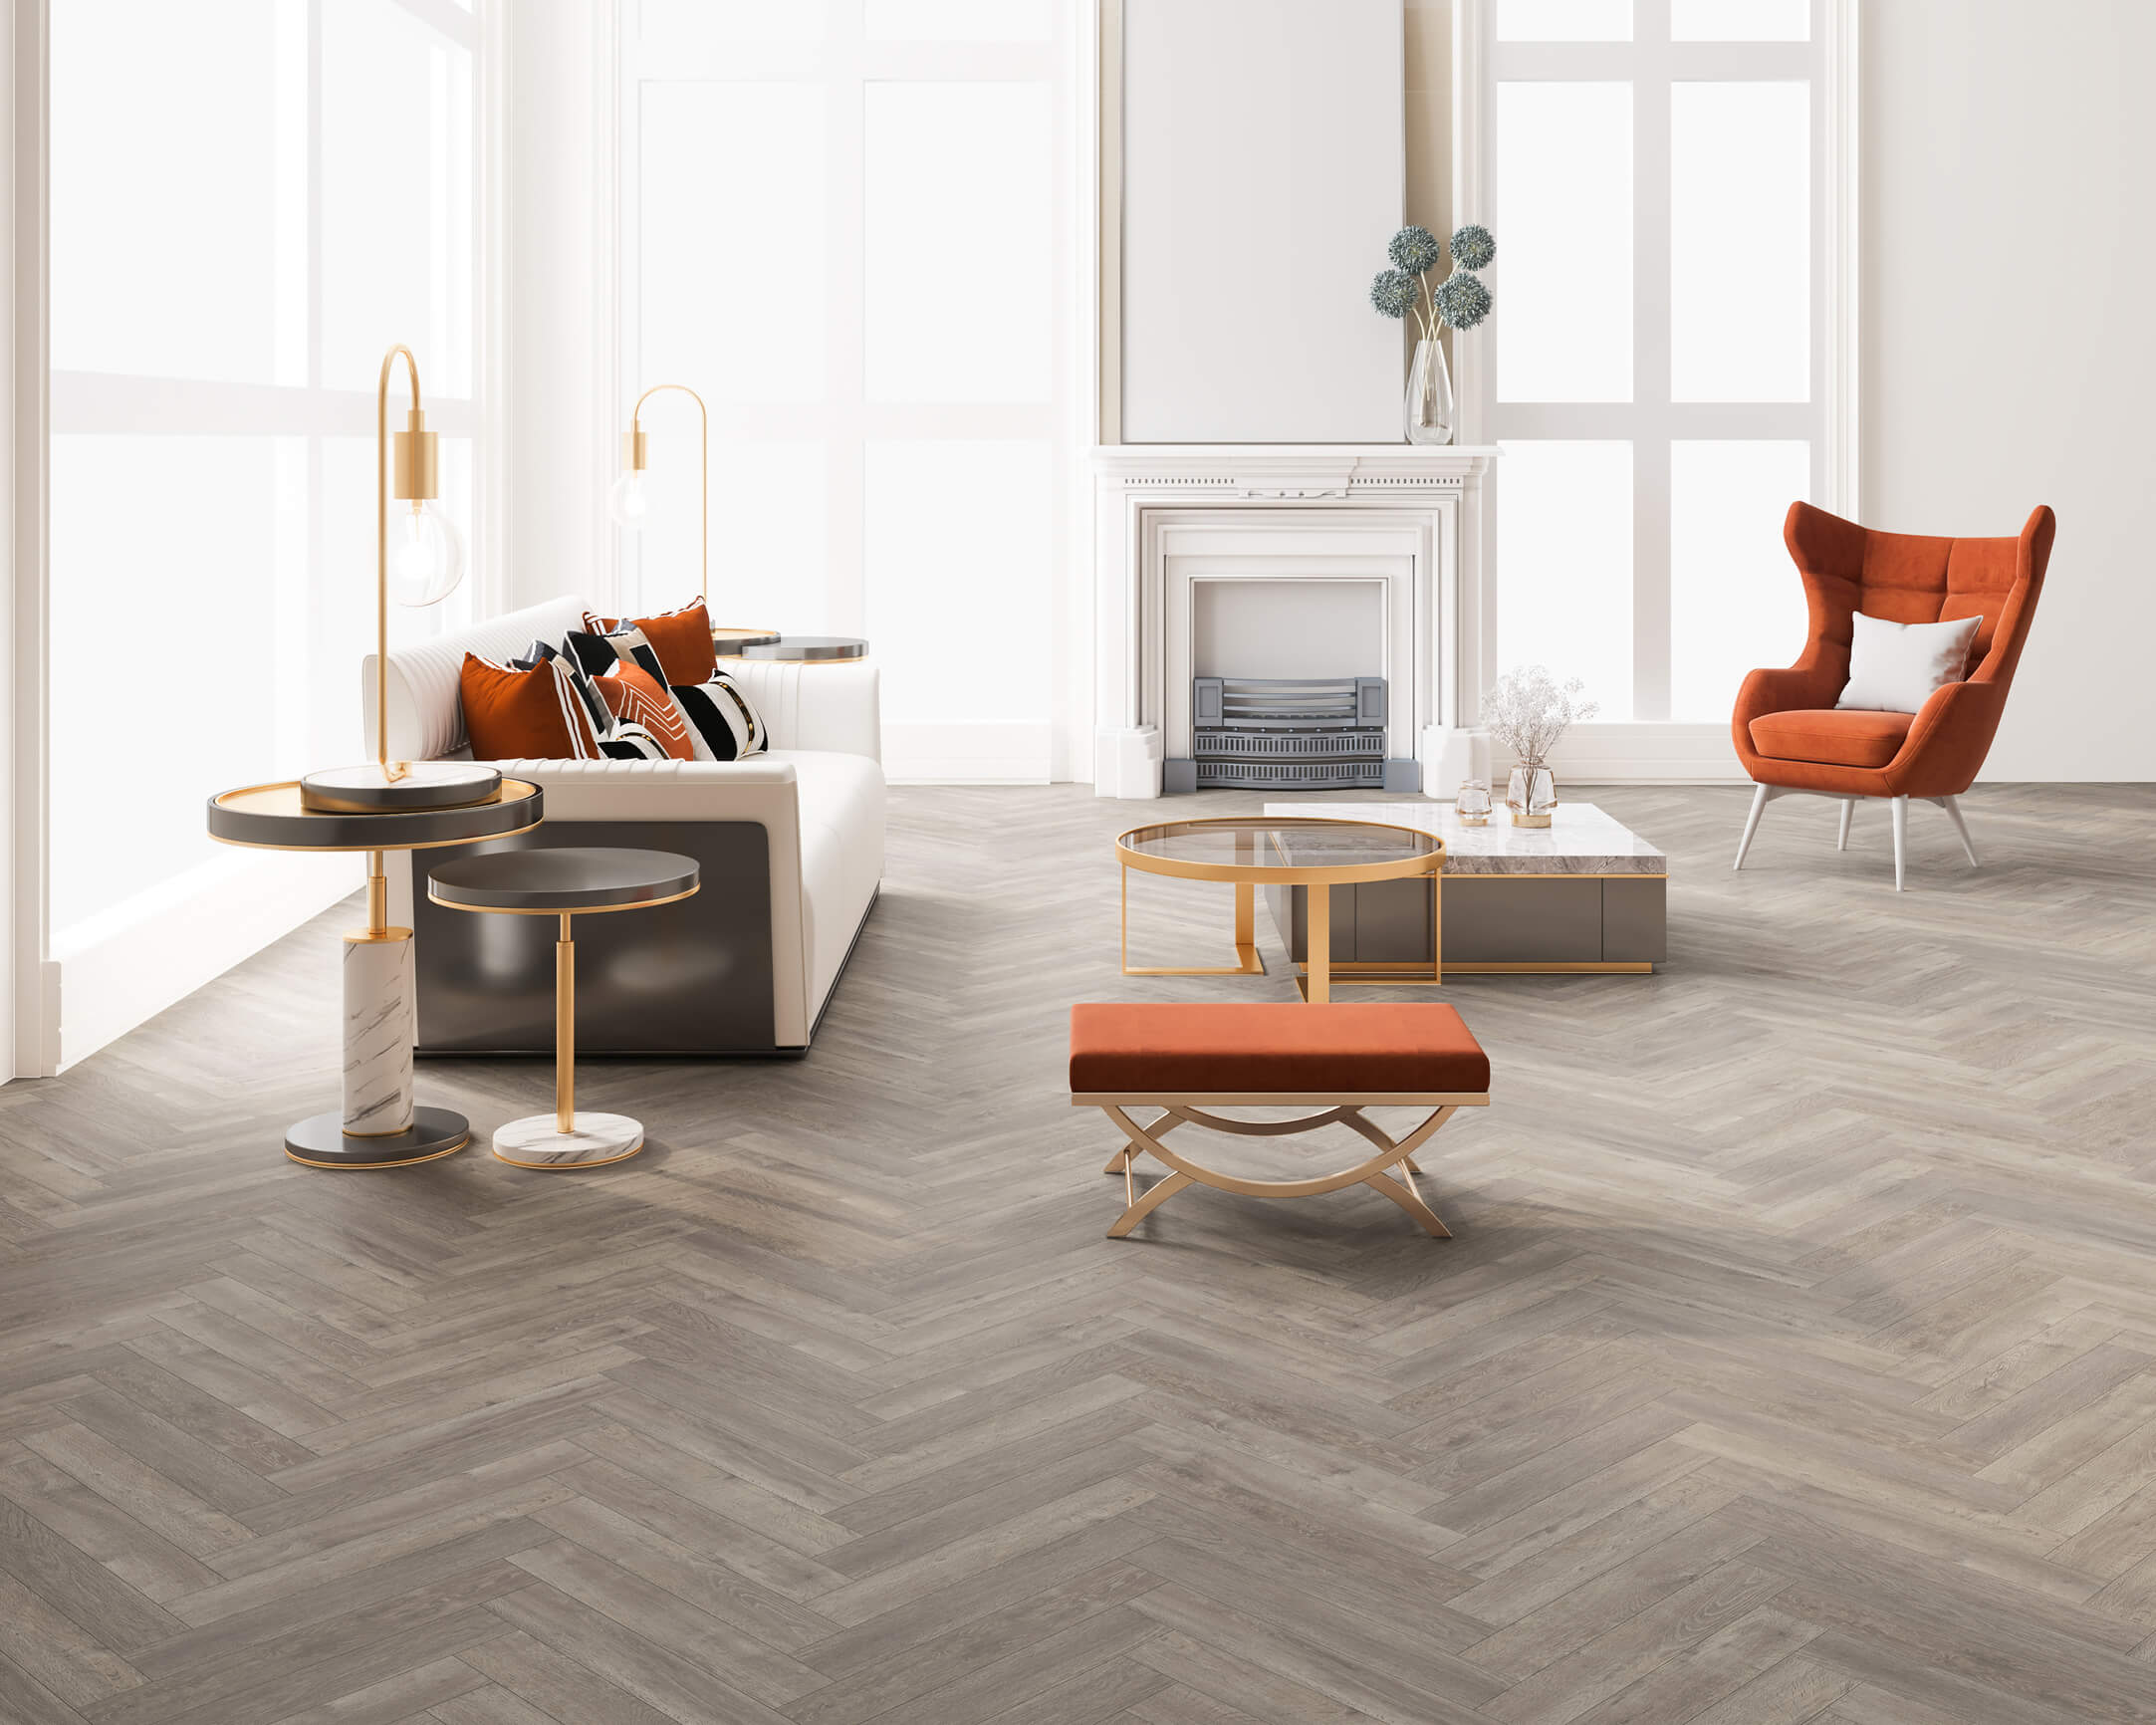 Studio Designs Herringbone | Bristol Carpet & Flooring